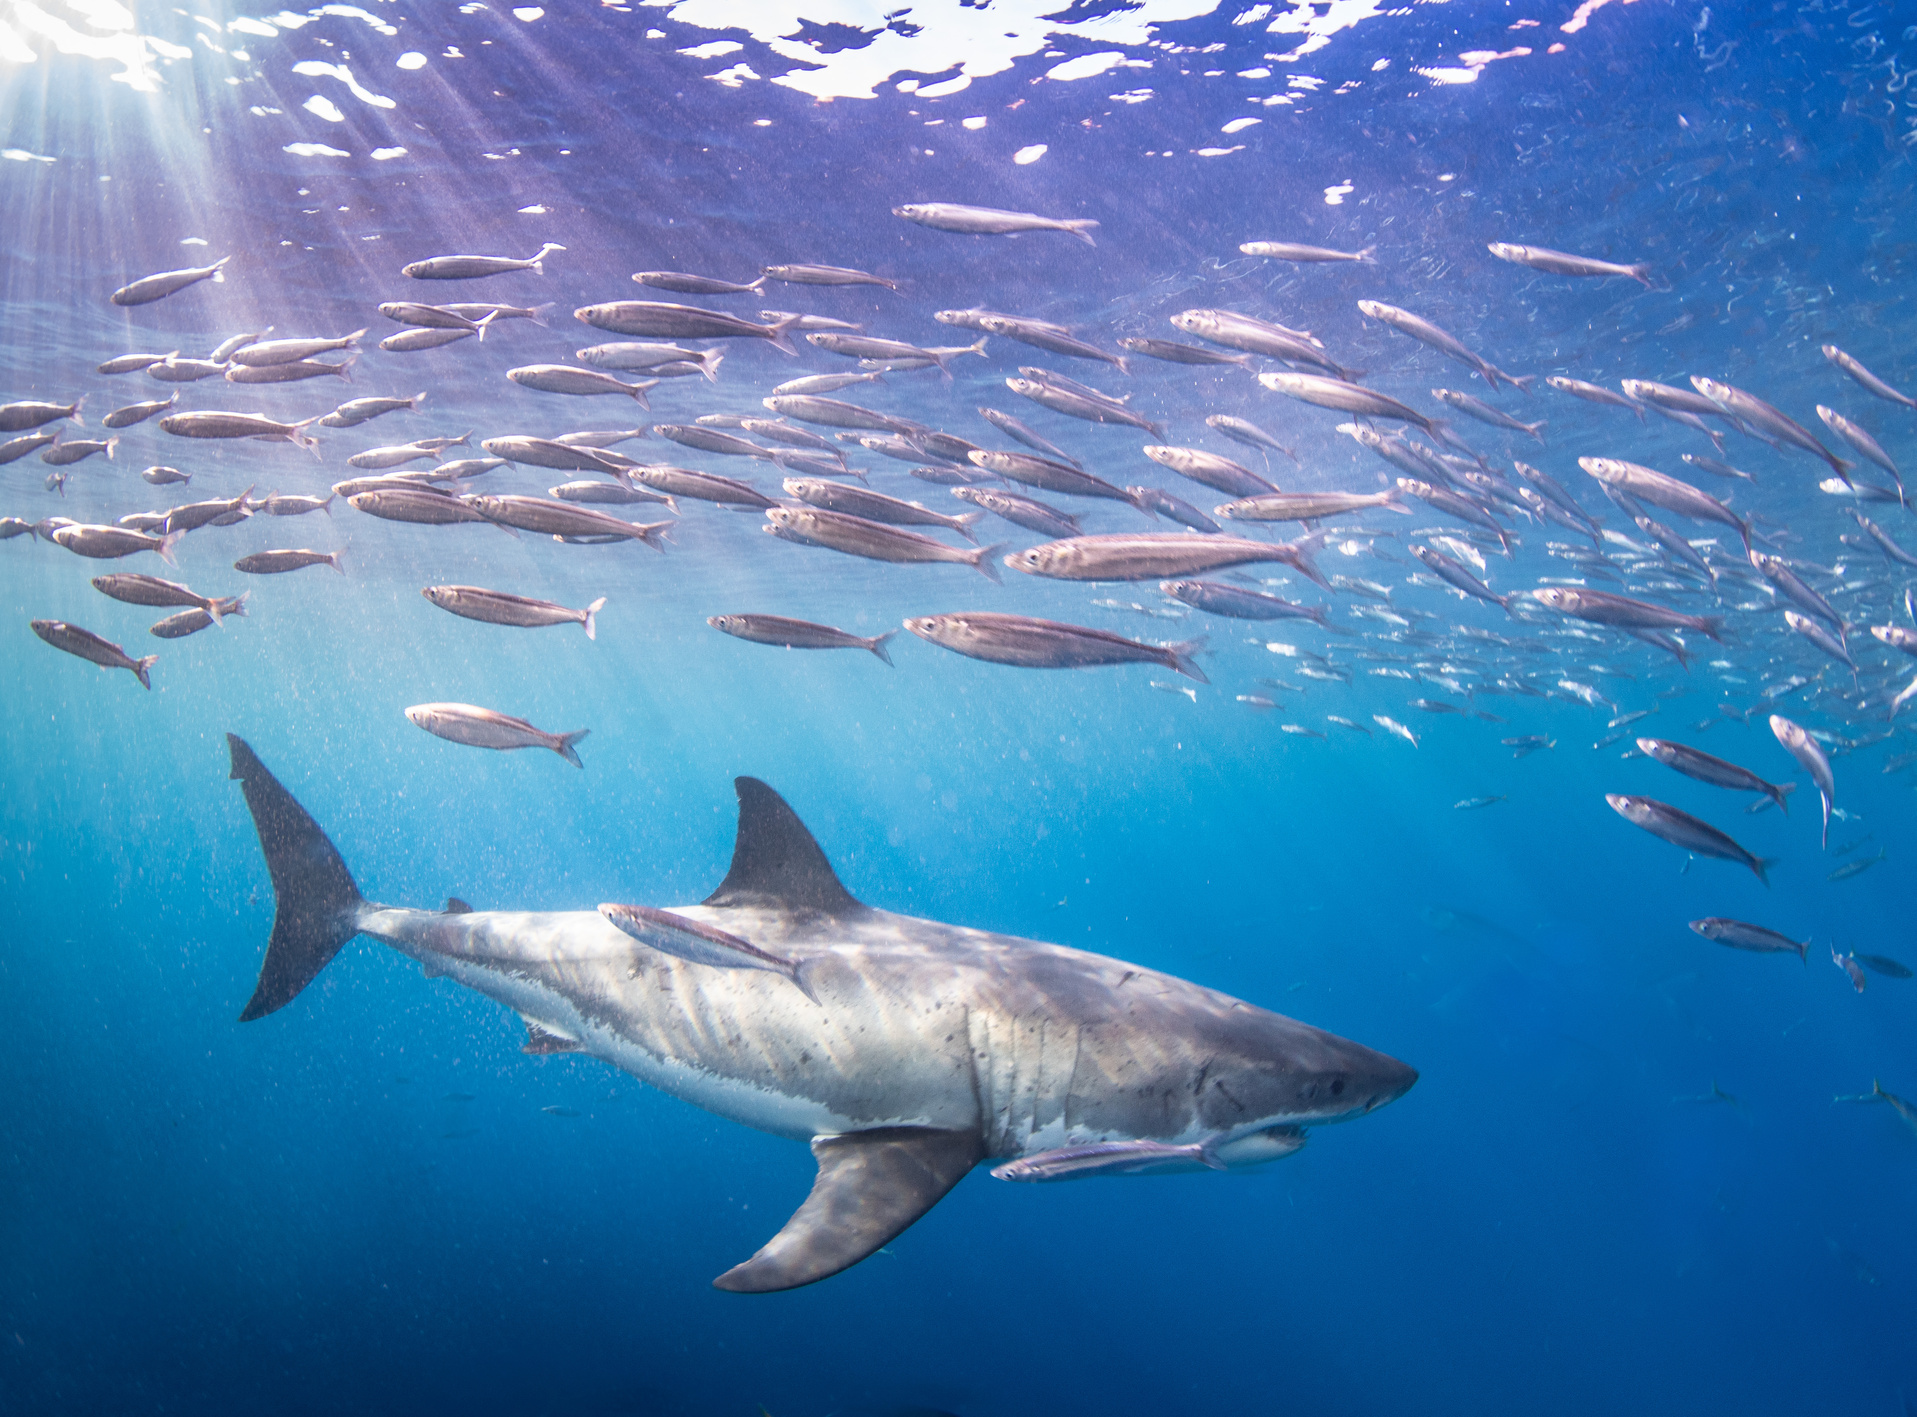 Gray and White Shark Underwater